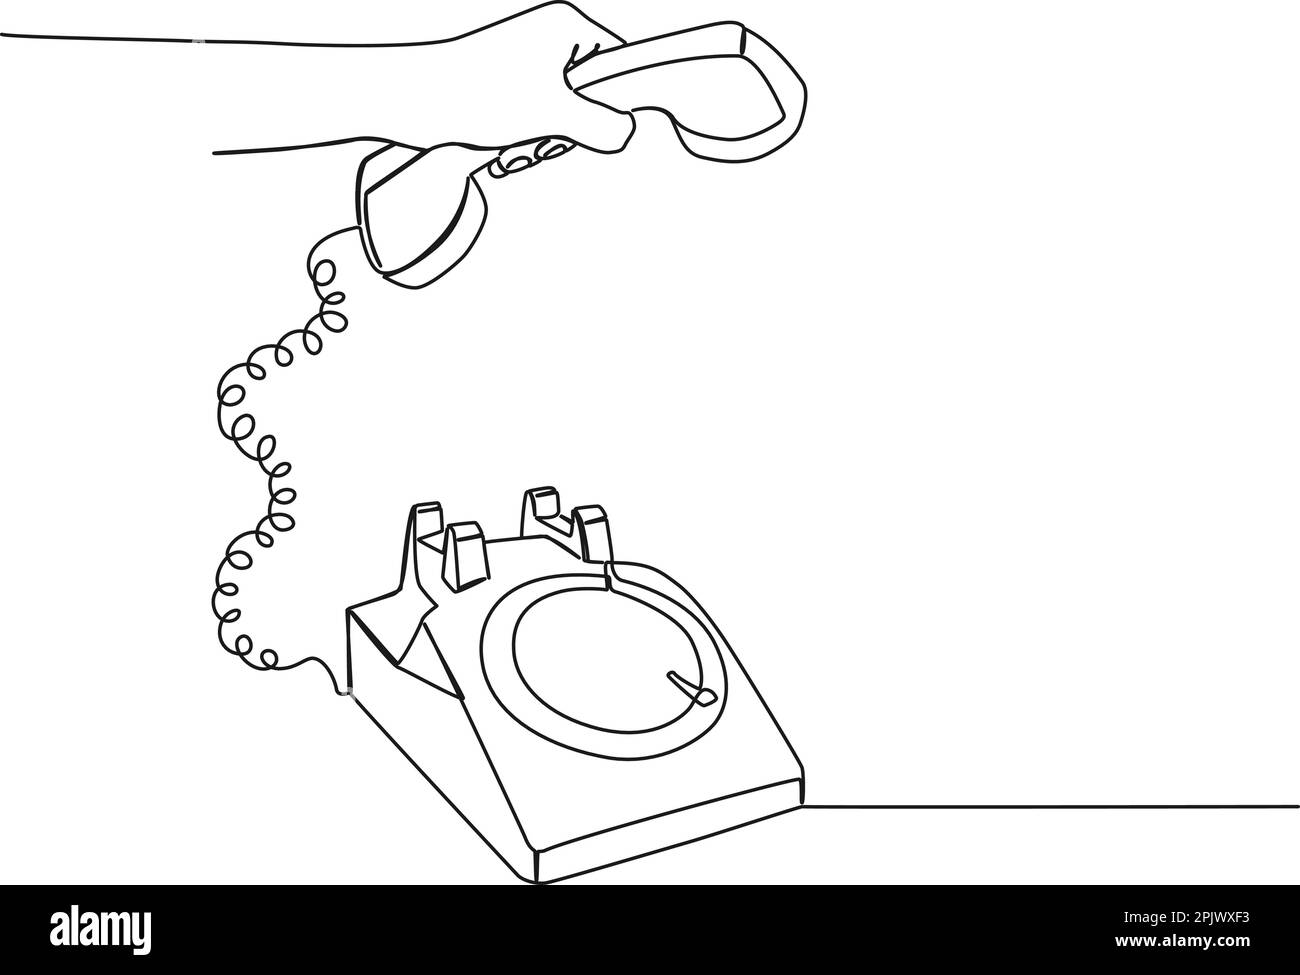 Durchgängiges einzeiliges Zeichnen des Handabnehmers des Drehwahltelefons, Line-Art-Vektordarstellung Stock Vektor